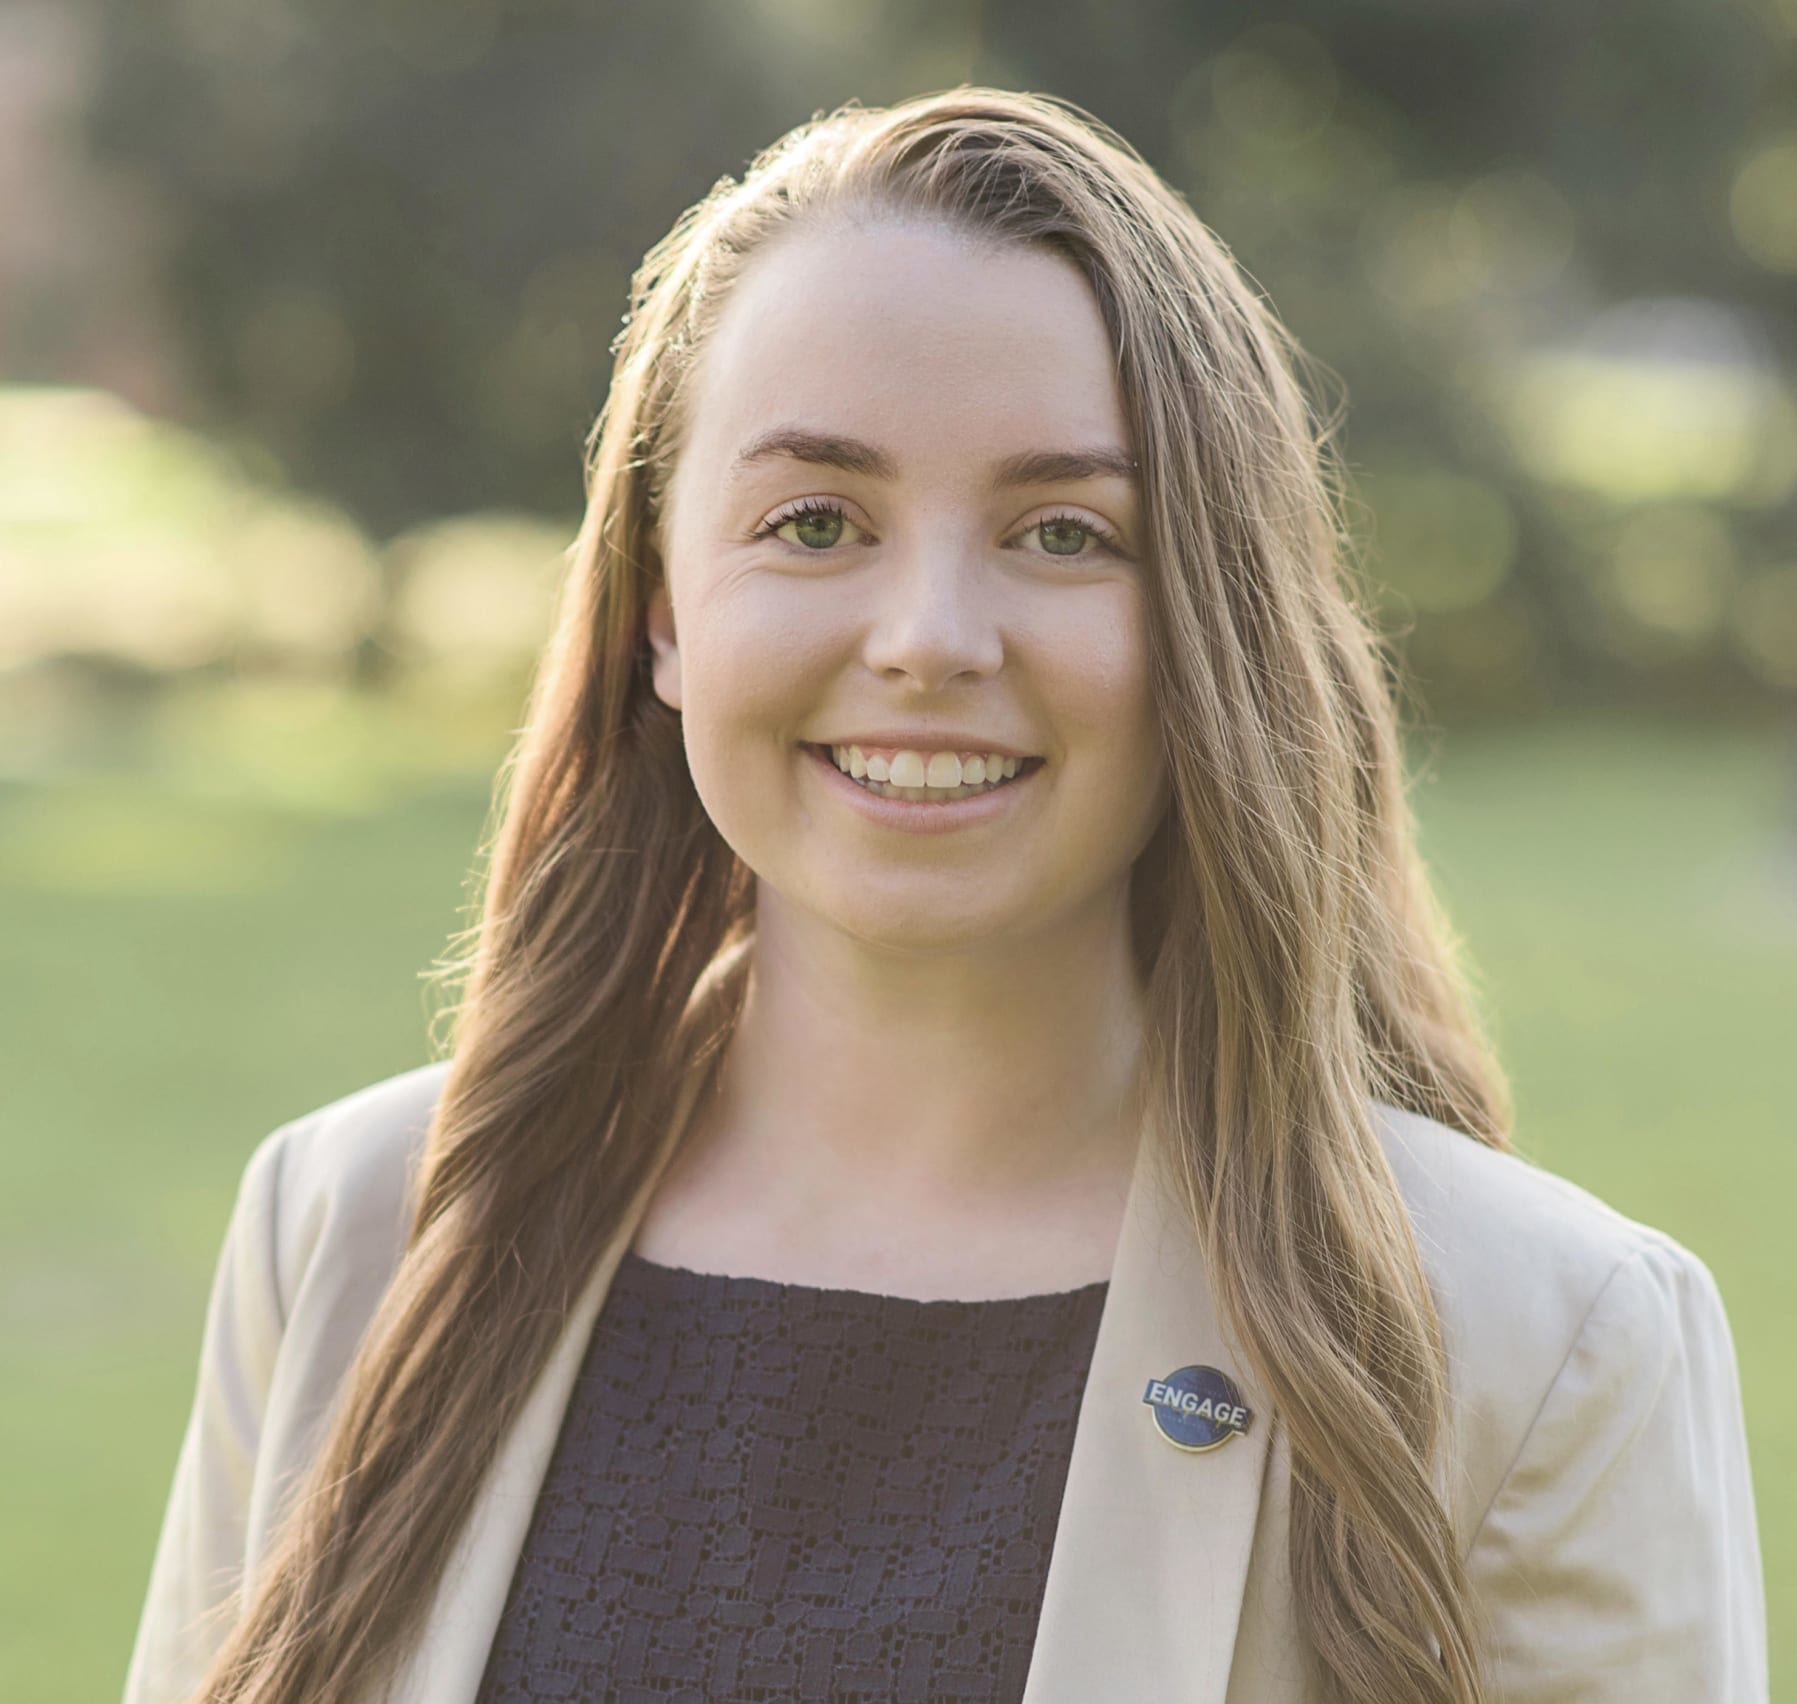 Rachel Lautigar – University of Louisiana at Lafayette